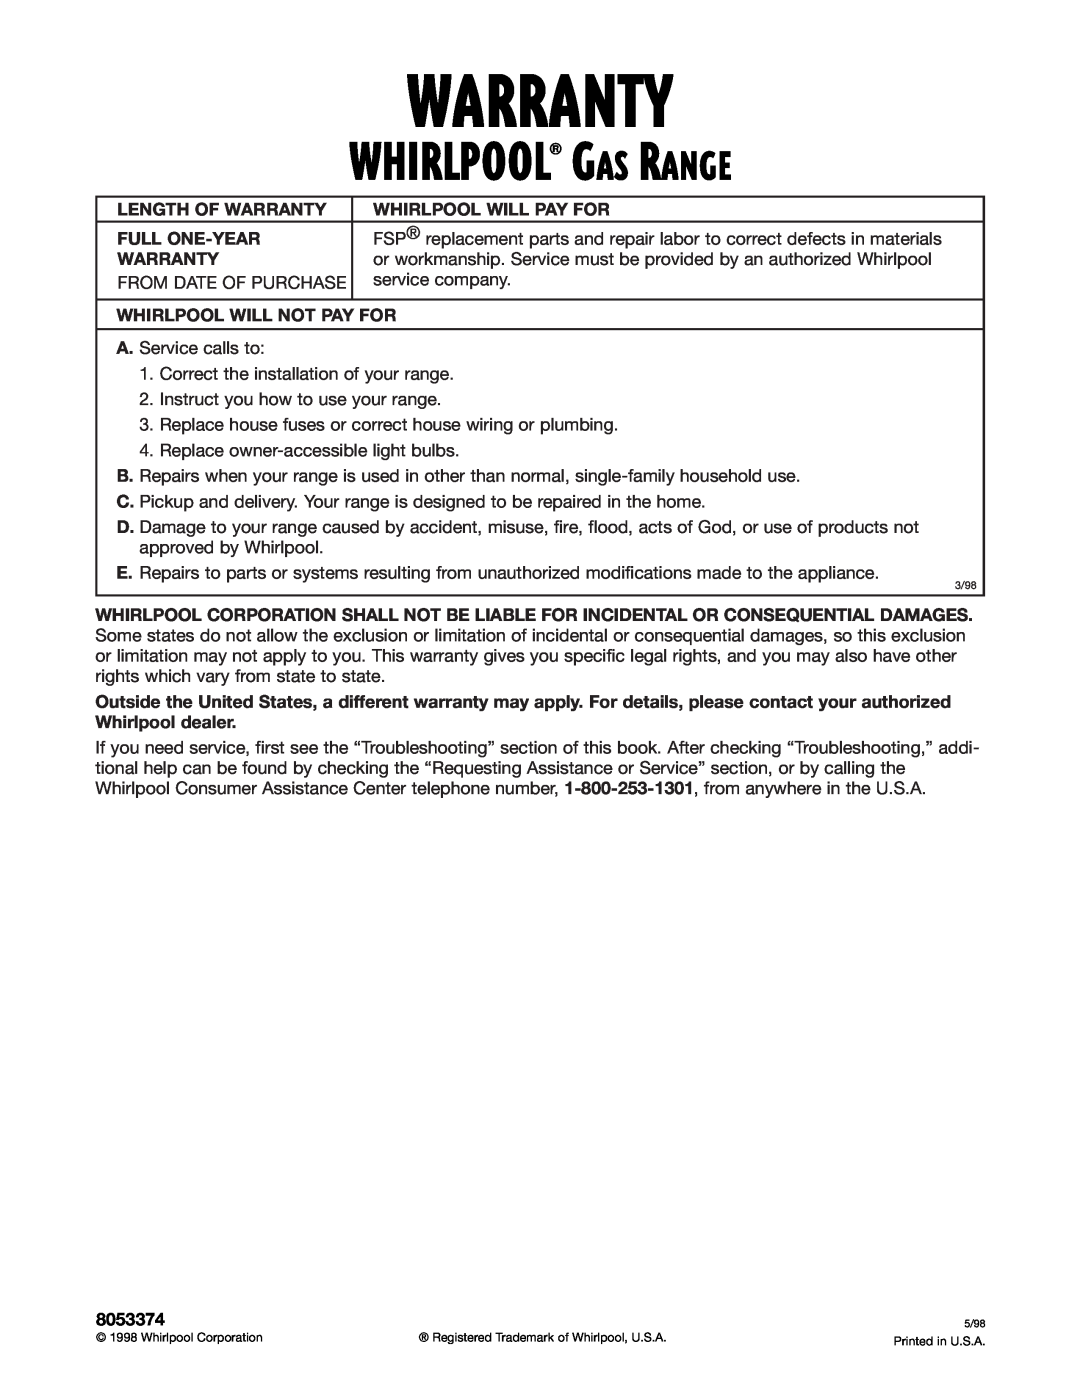 Whirlpool SF350BEG warranty Warranty, Whirlpool Gas Range 